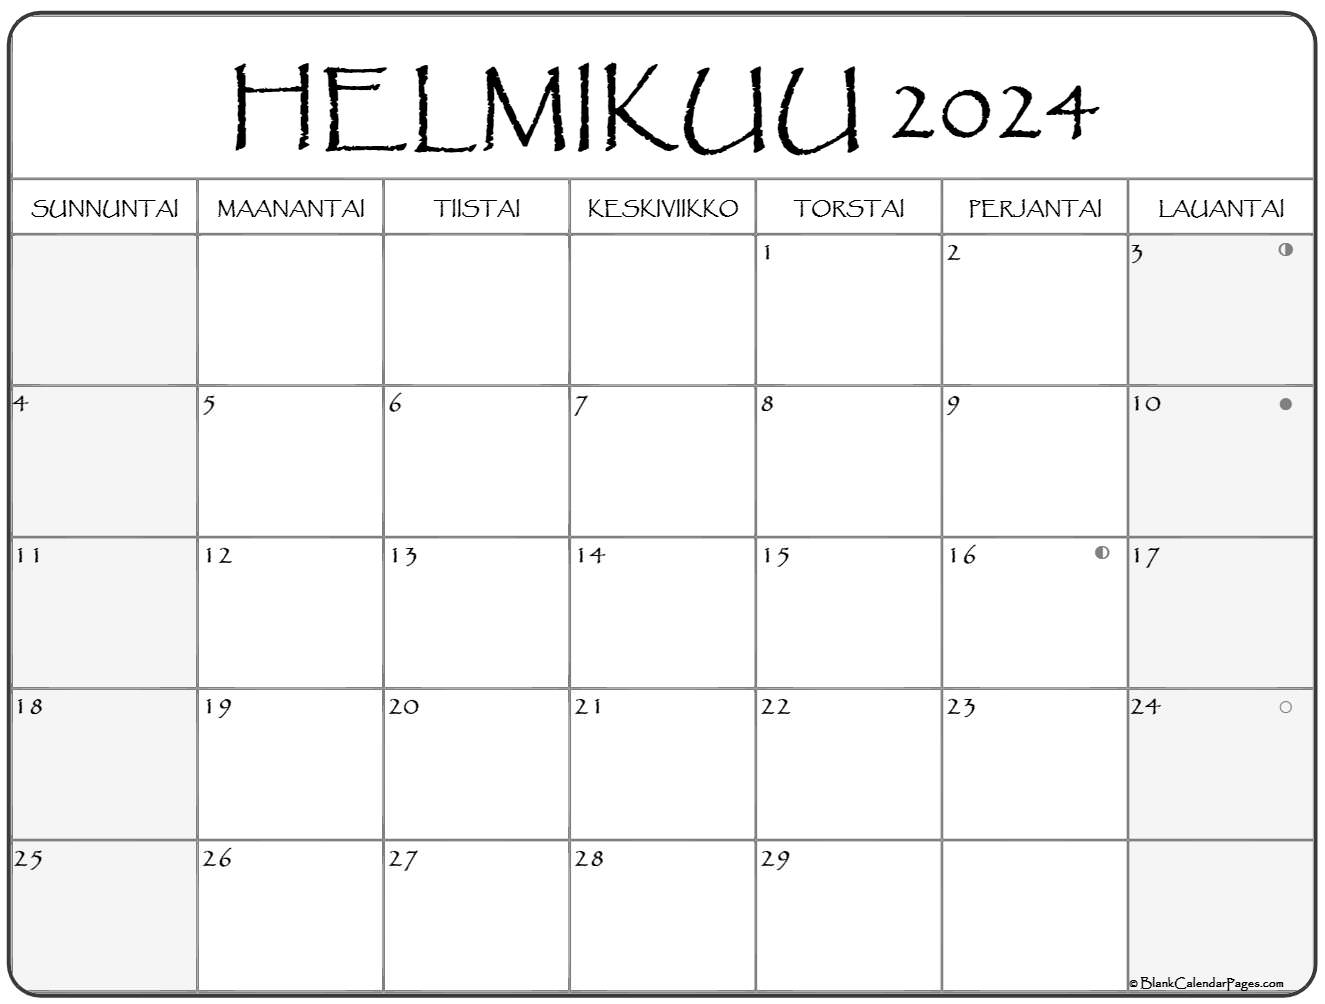 helmikuu-2024-tulostettava-kalenteri-suomeksi-kalenteri-helmikuu